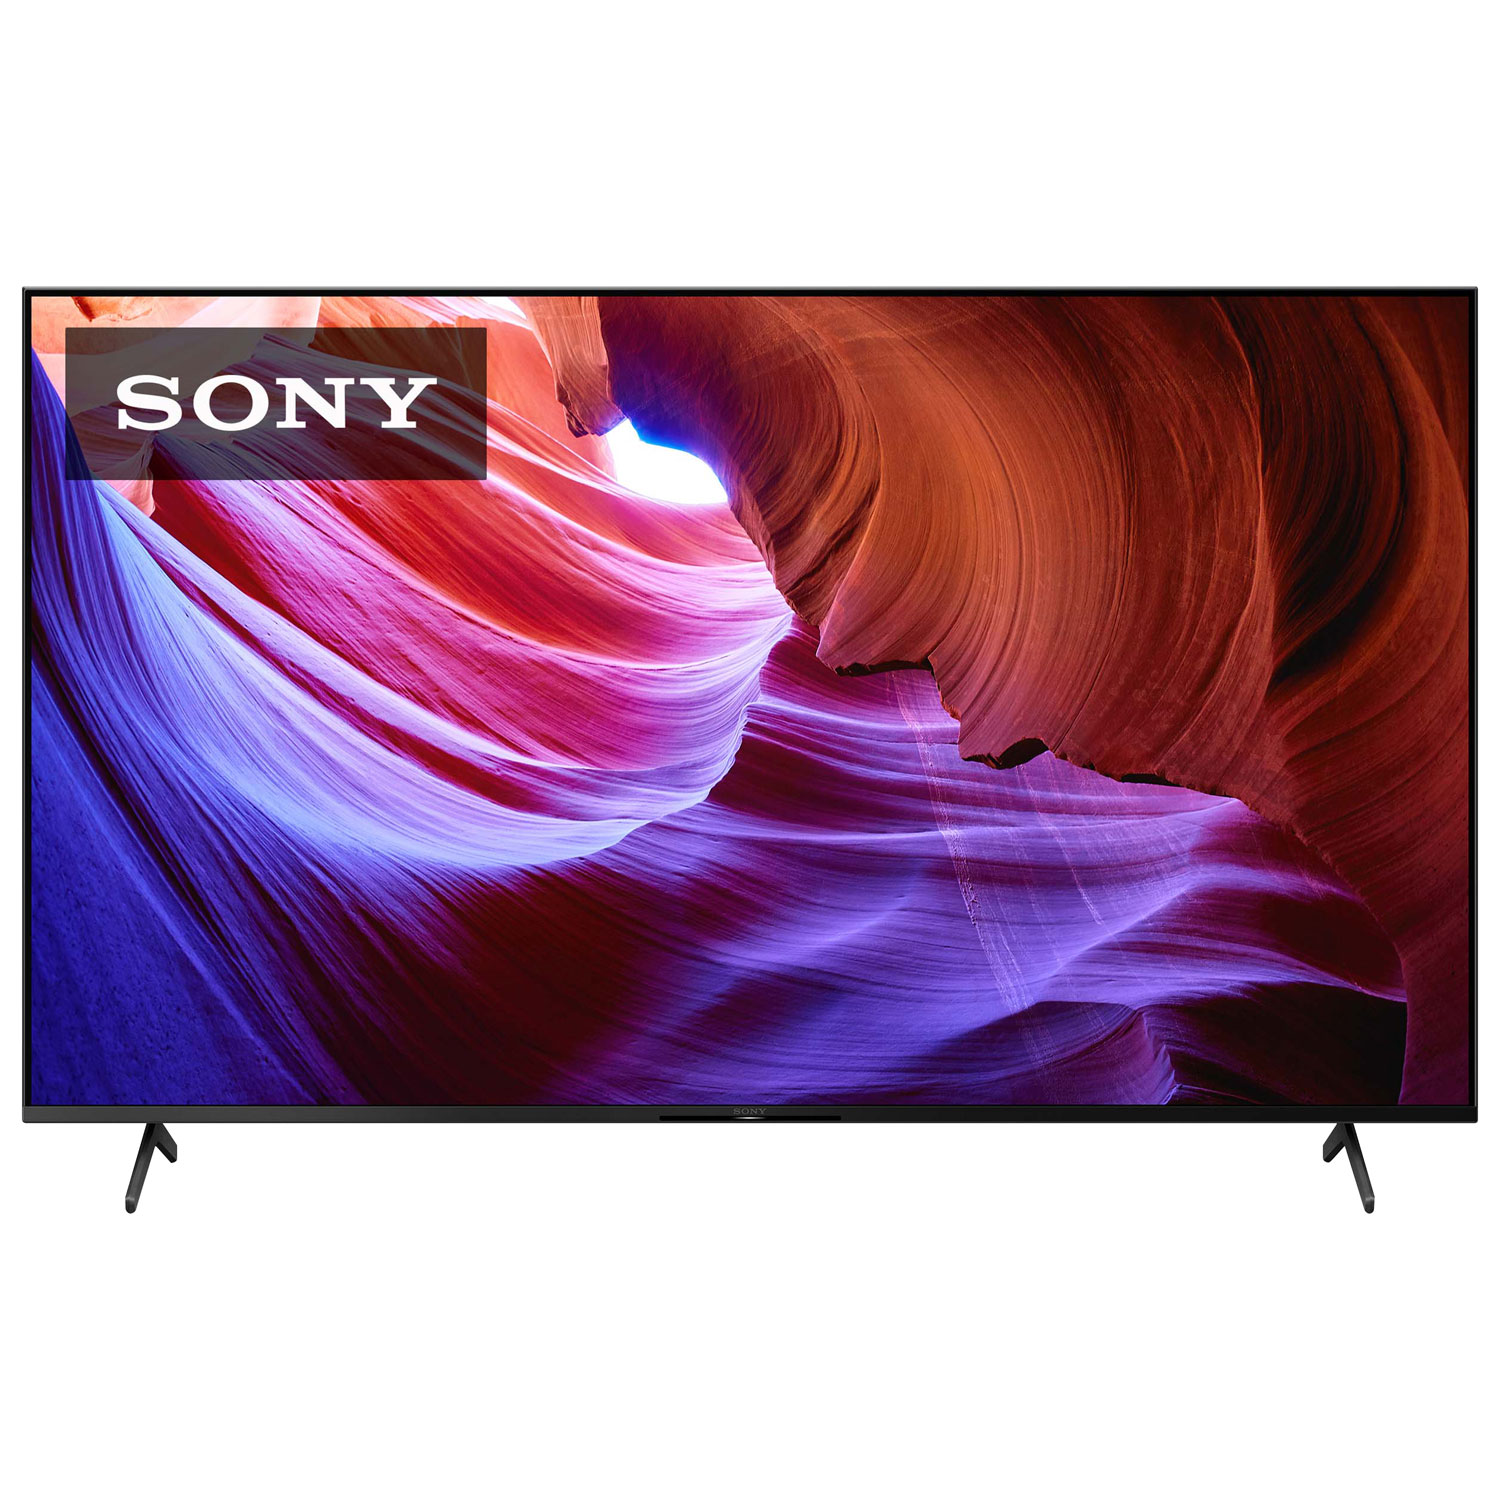 Sony 4k Smart Tv